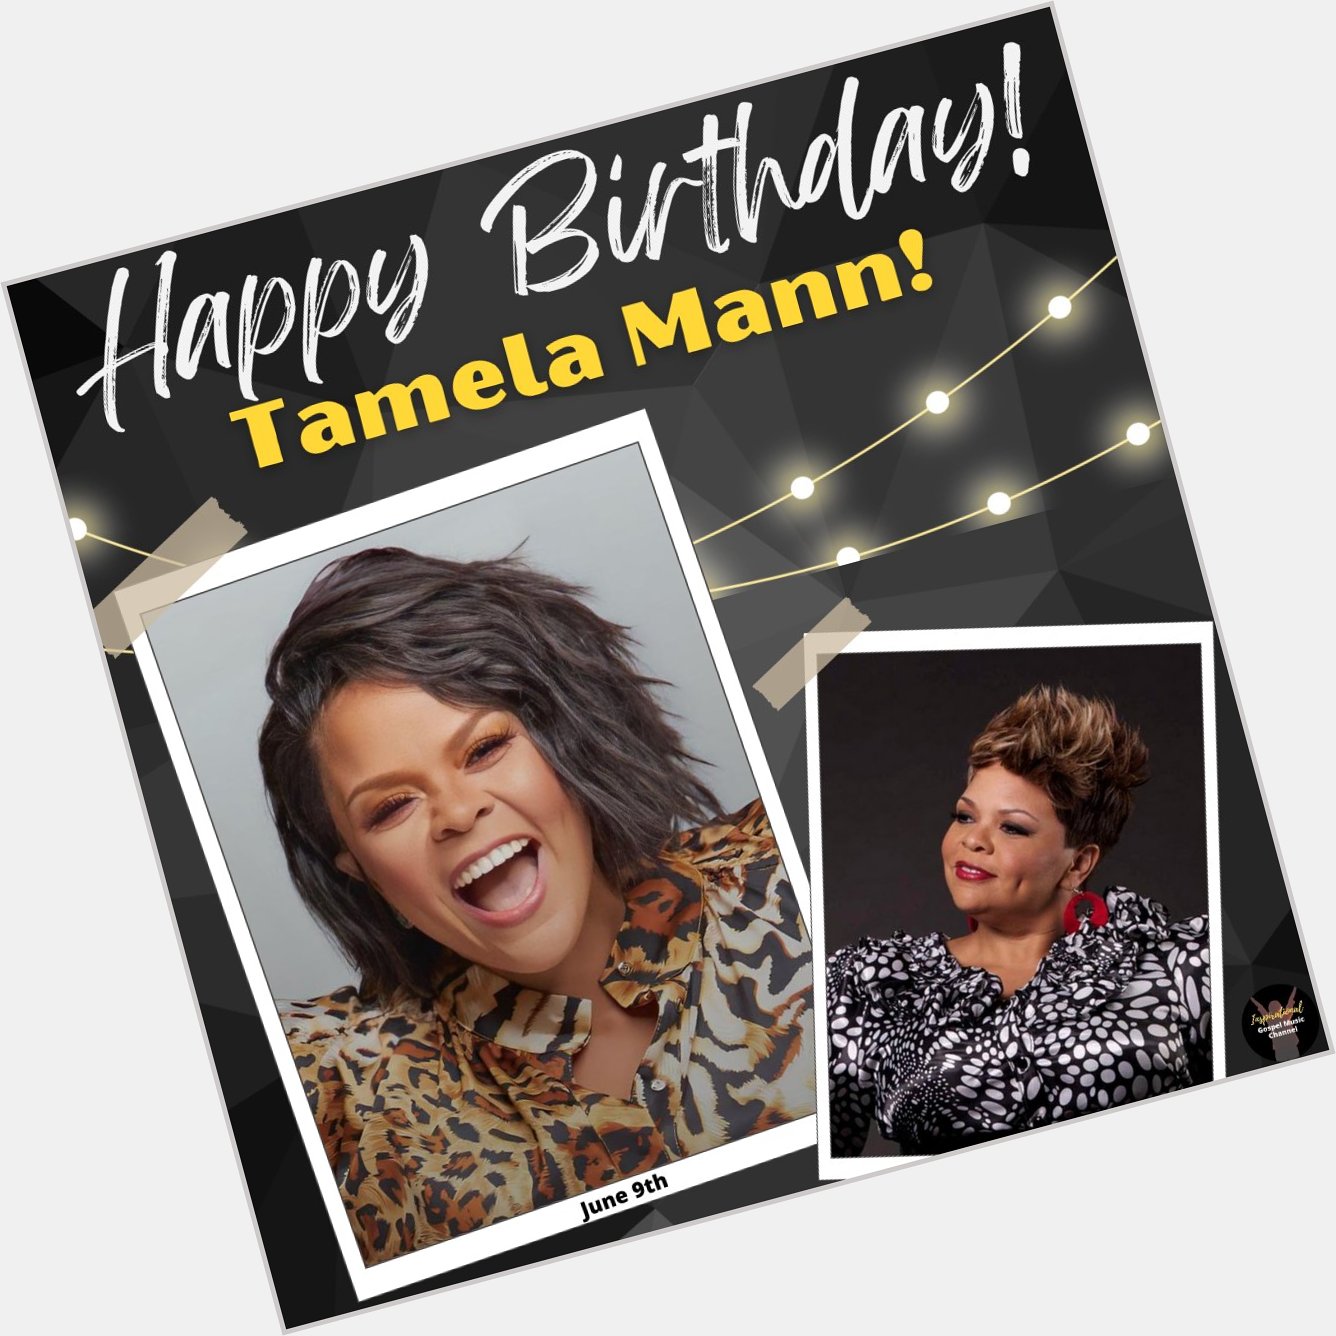 Happy Birthday, TAMELA MANN!  